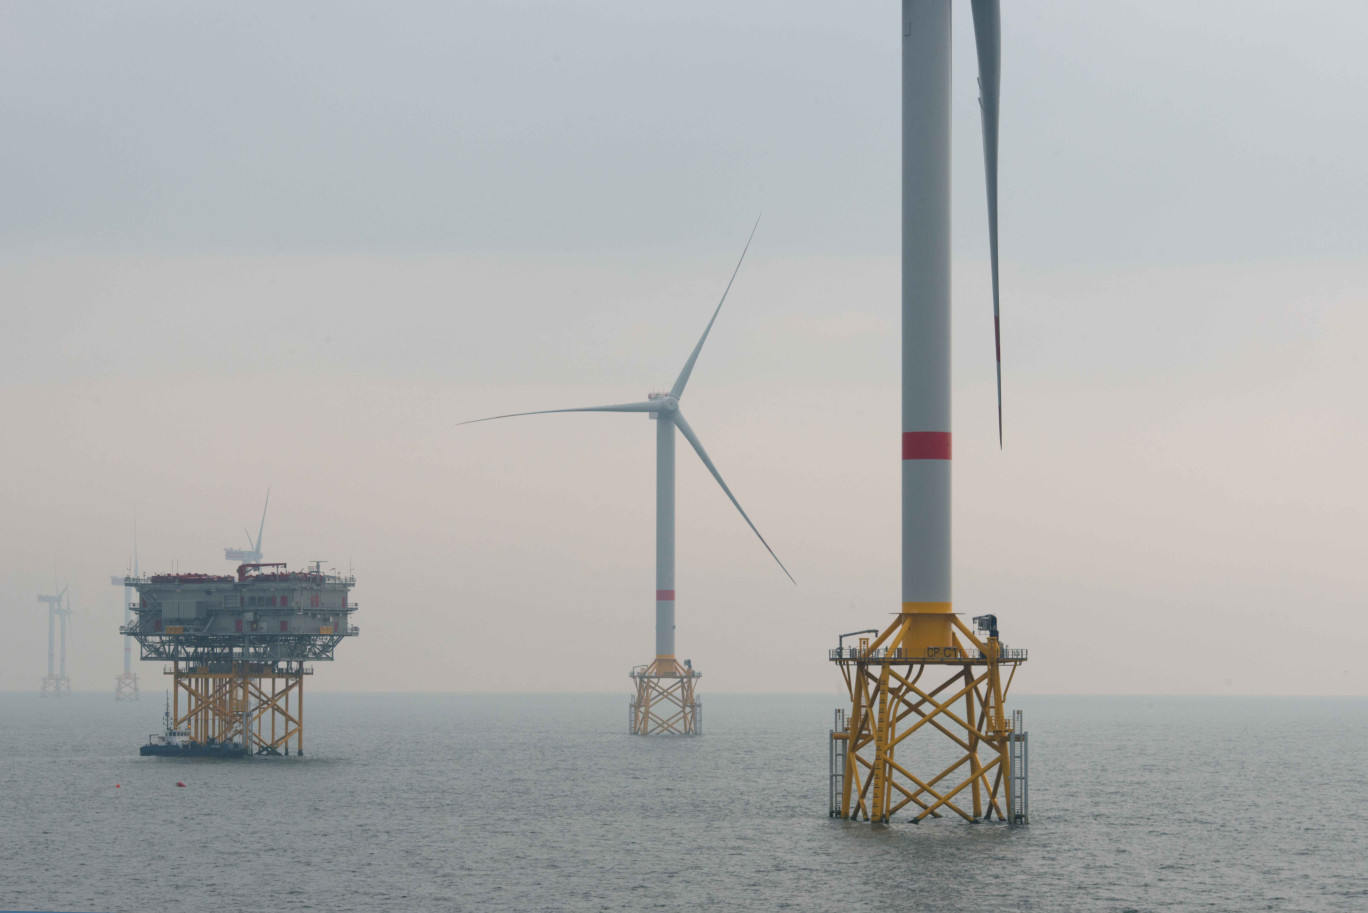 Les 62 éoliennes en pleine mer, de 8 MW chacune, devraient être mises en service en 2026. (© Nicolas Job)